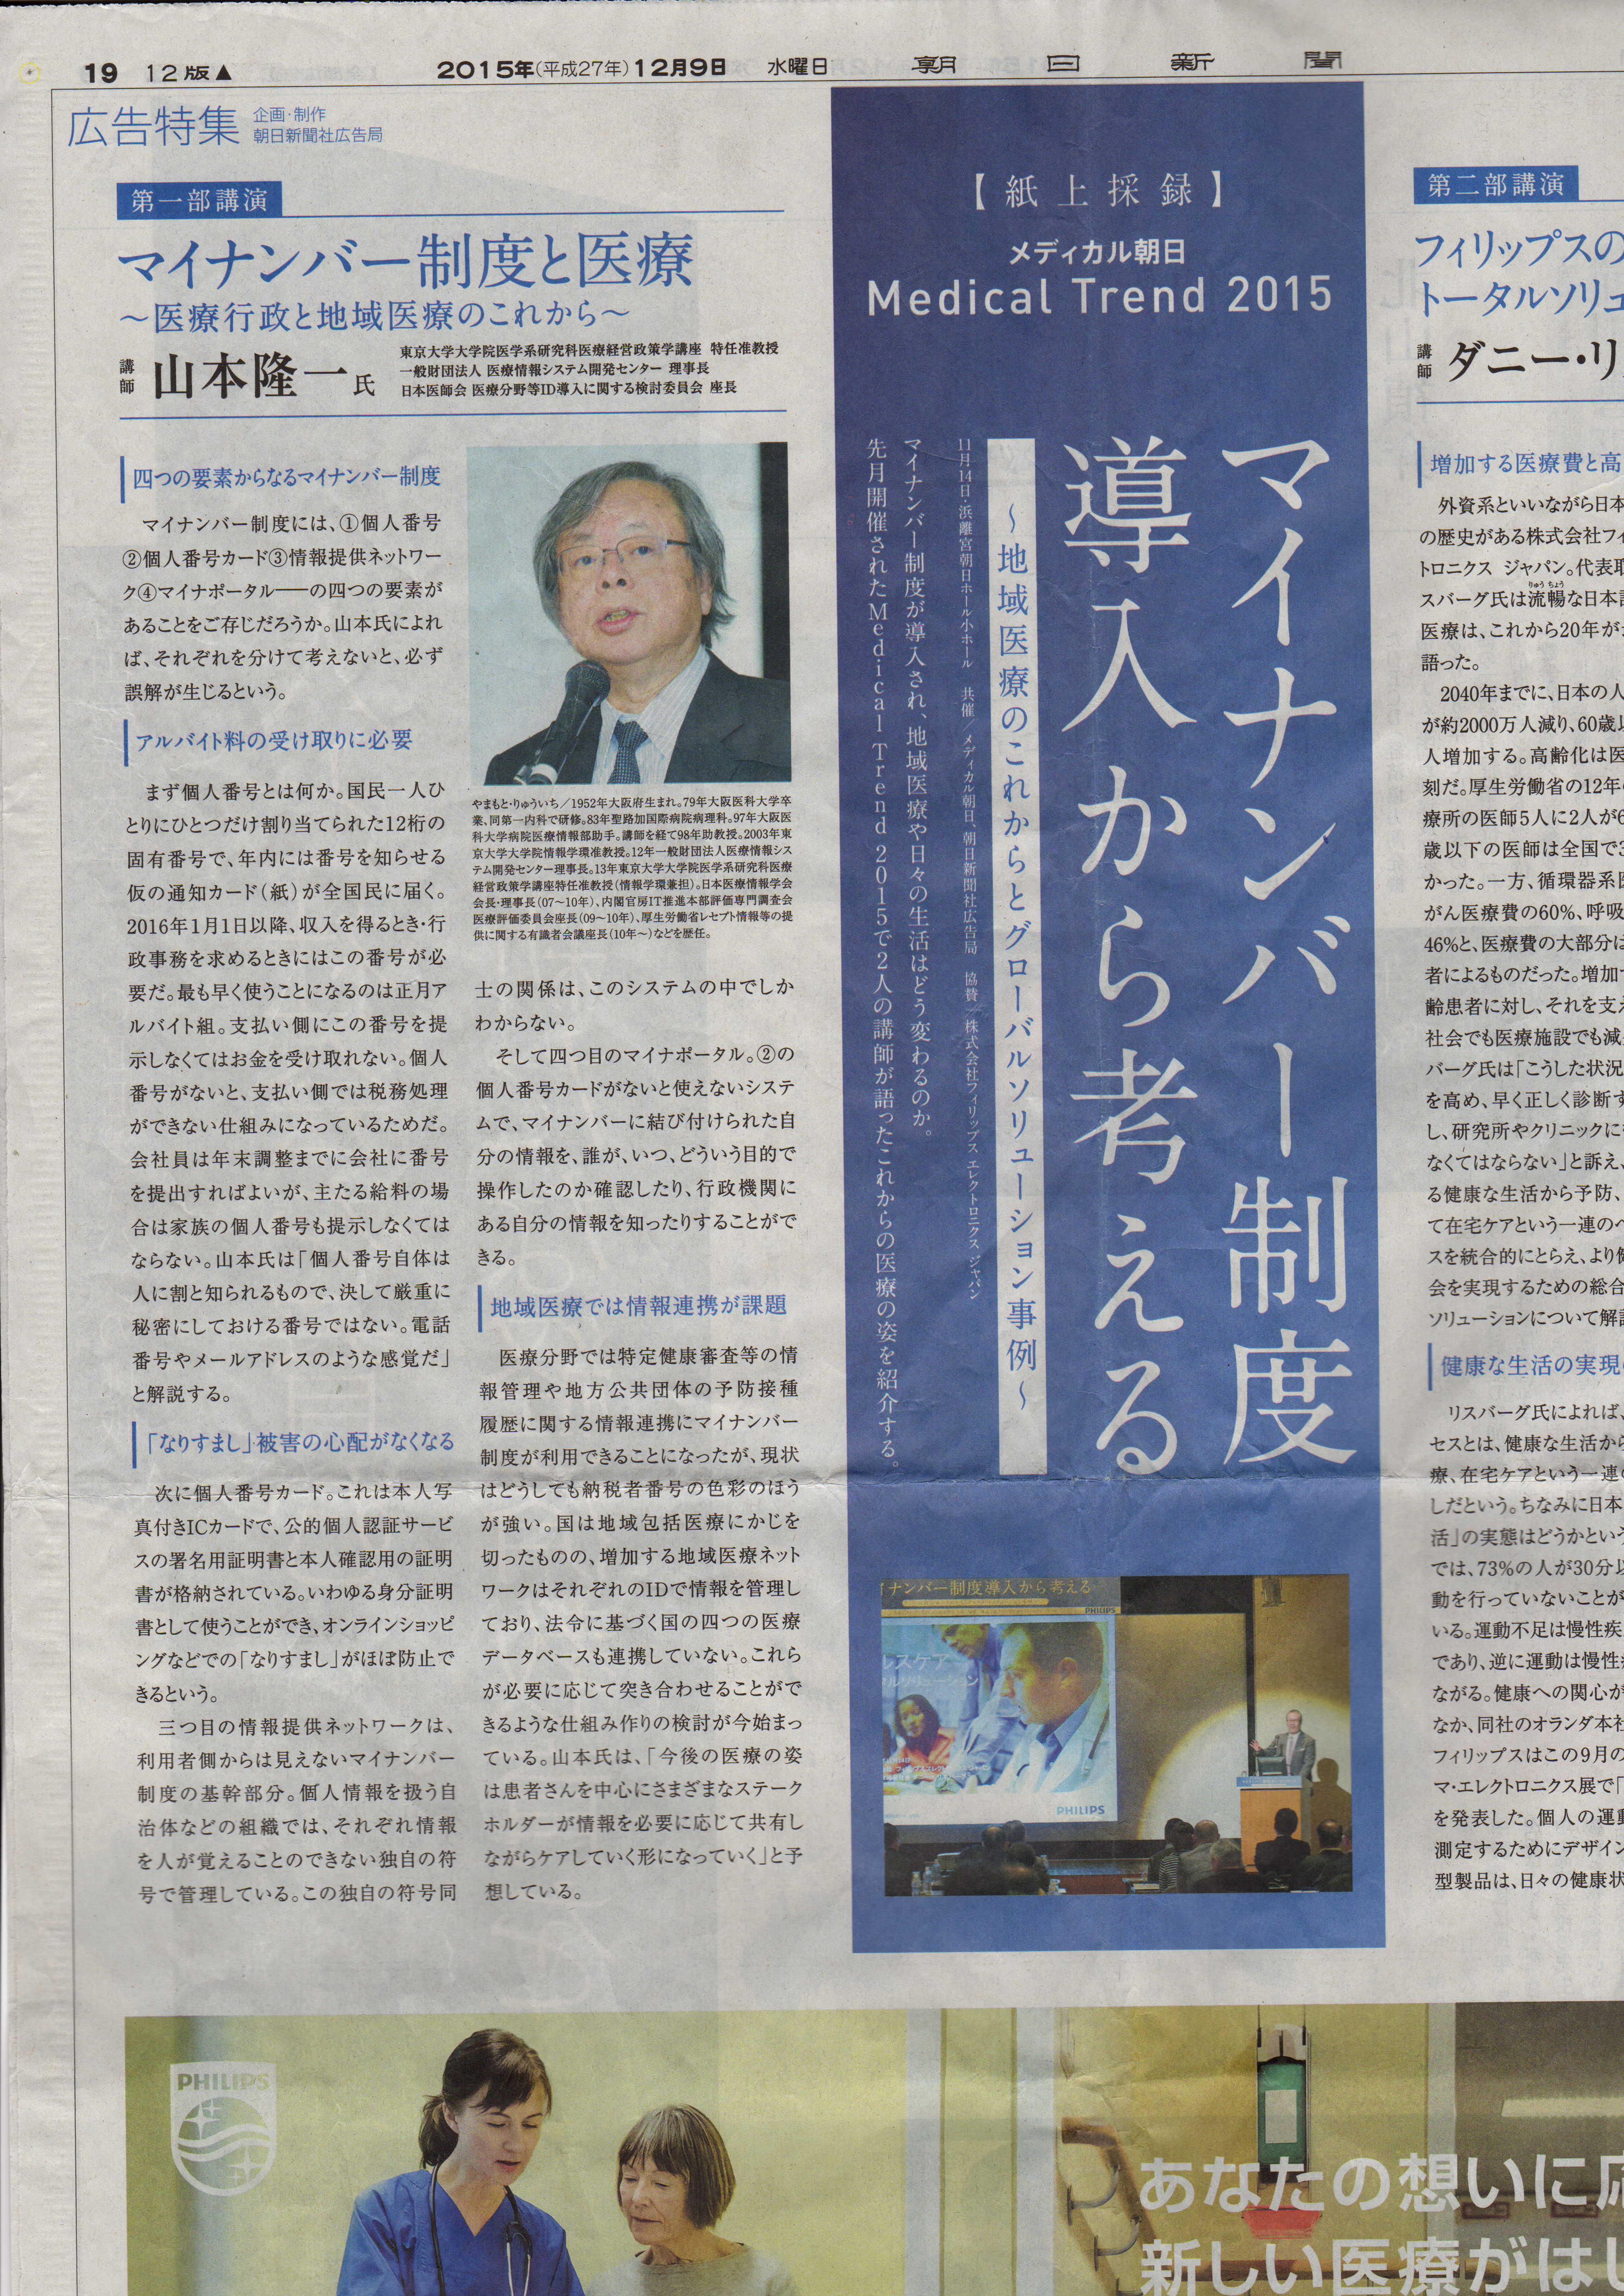 山本隆一先生「マイナンバー制度と医療：朝日新聞１２月